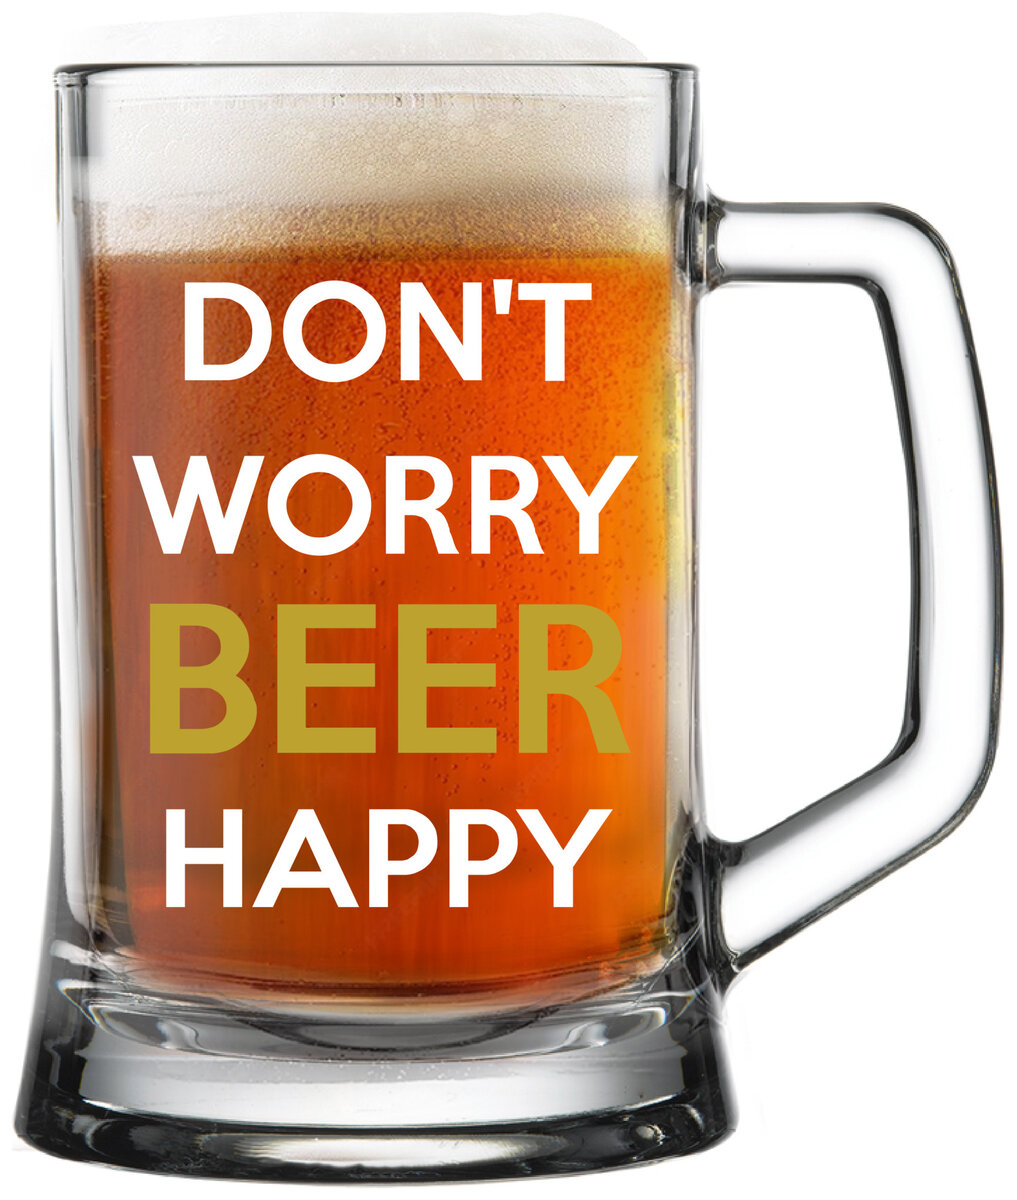 DON'T WORRY BEER HAPPY - pivní sklenička 0,5 l